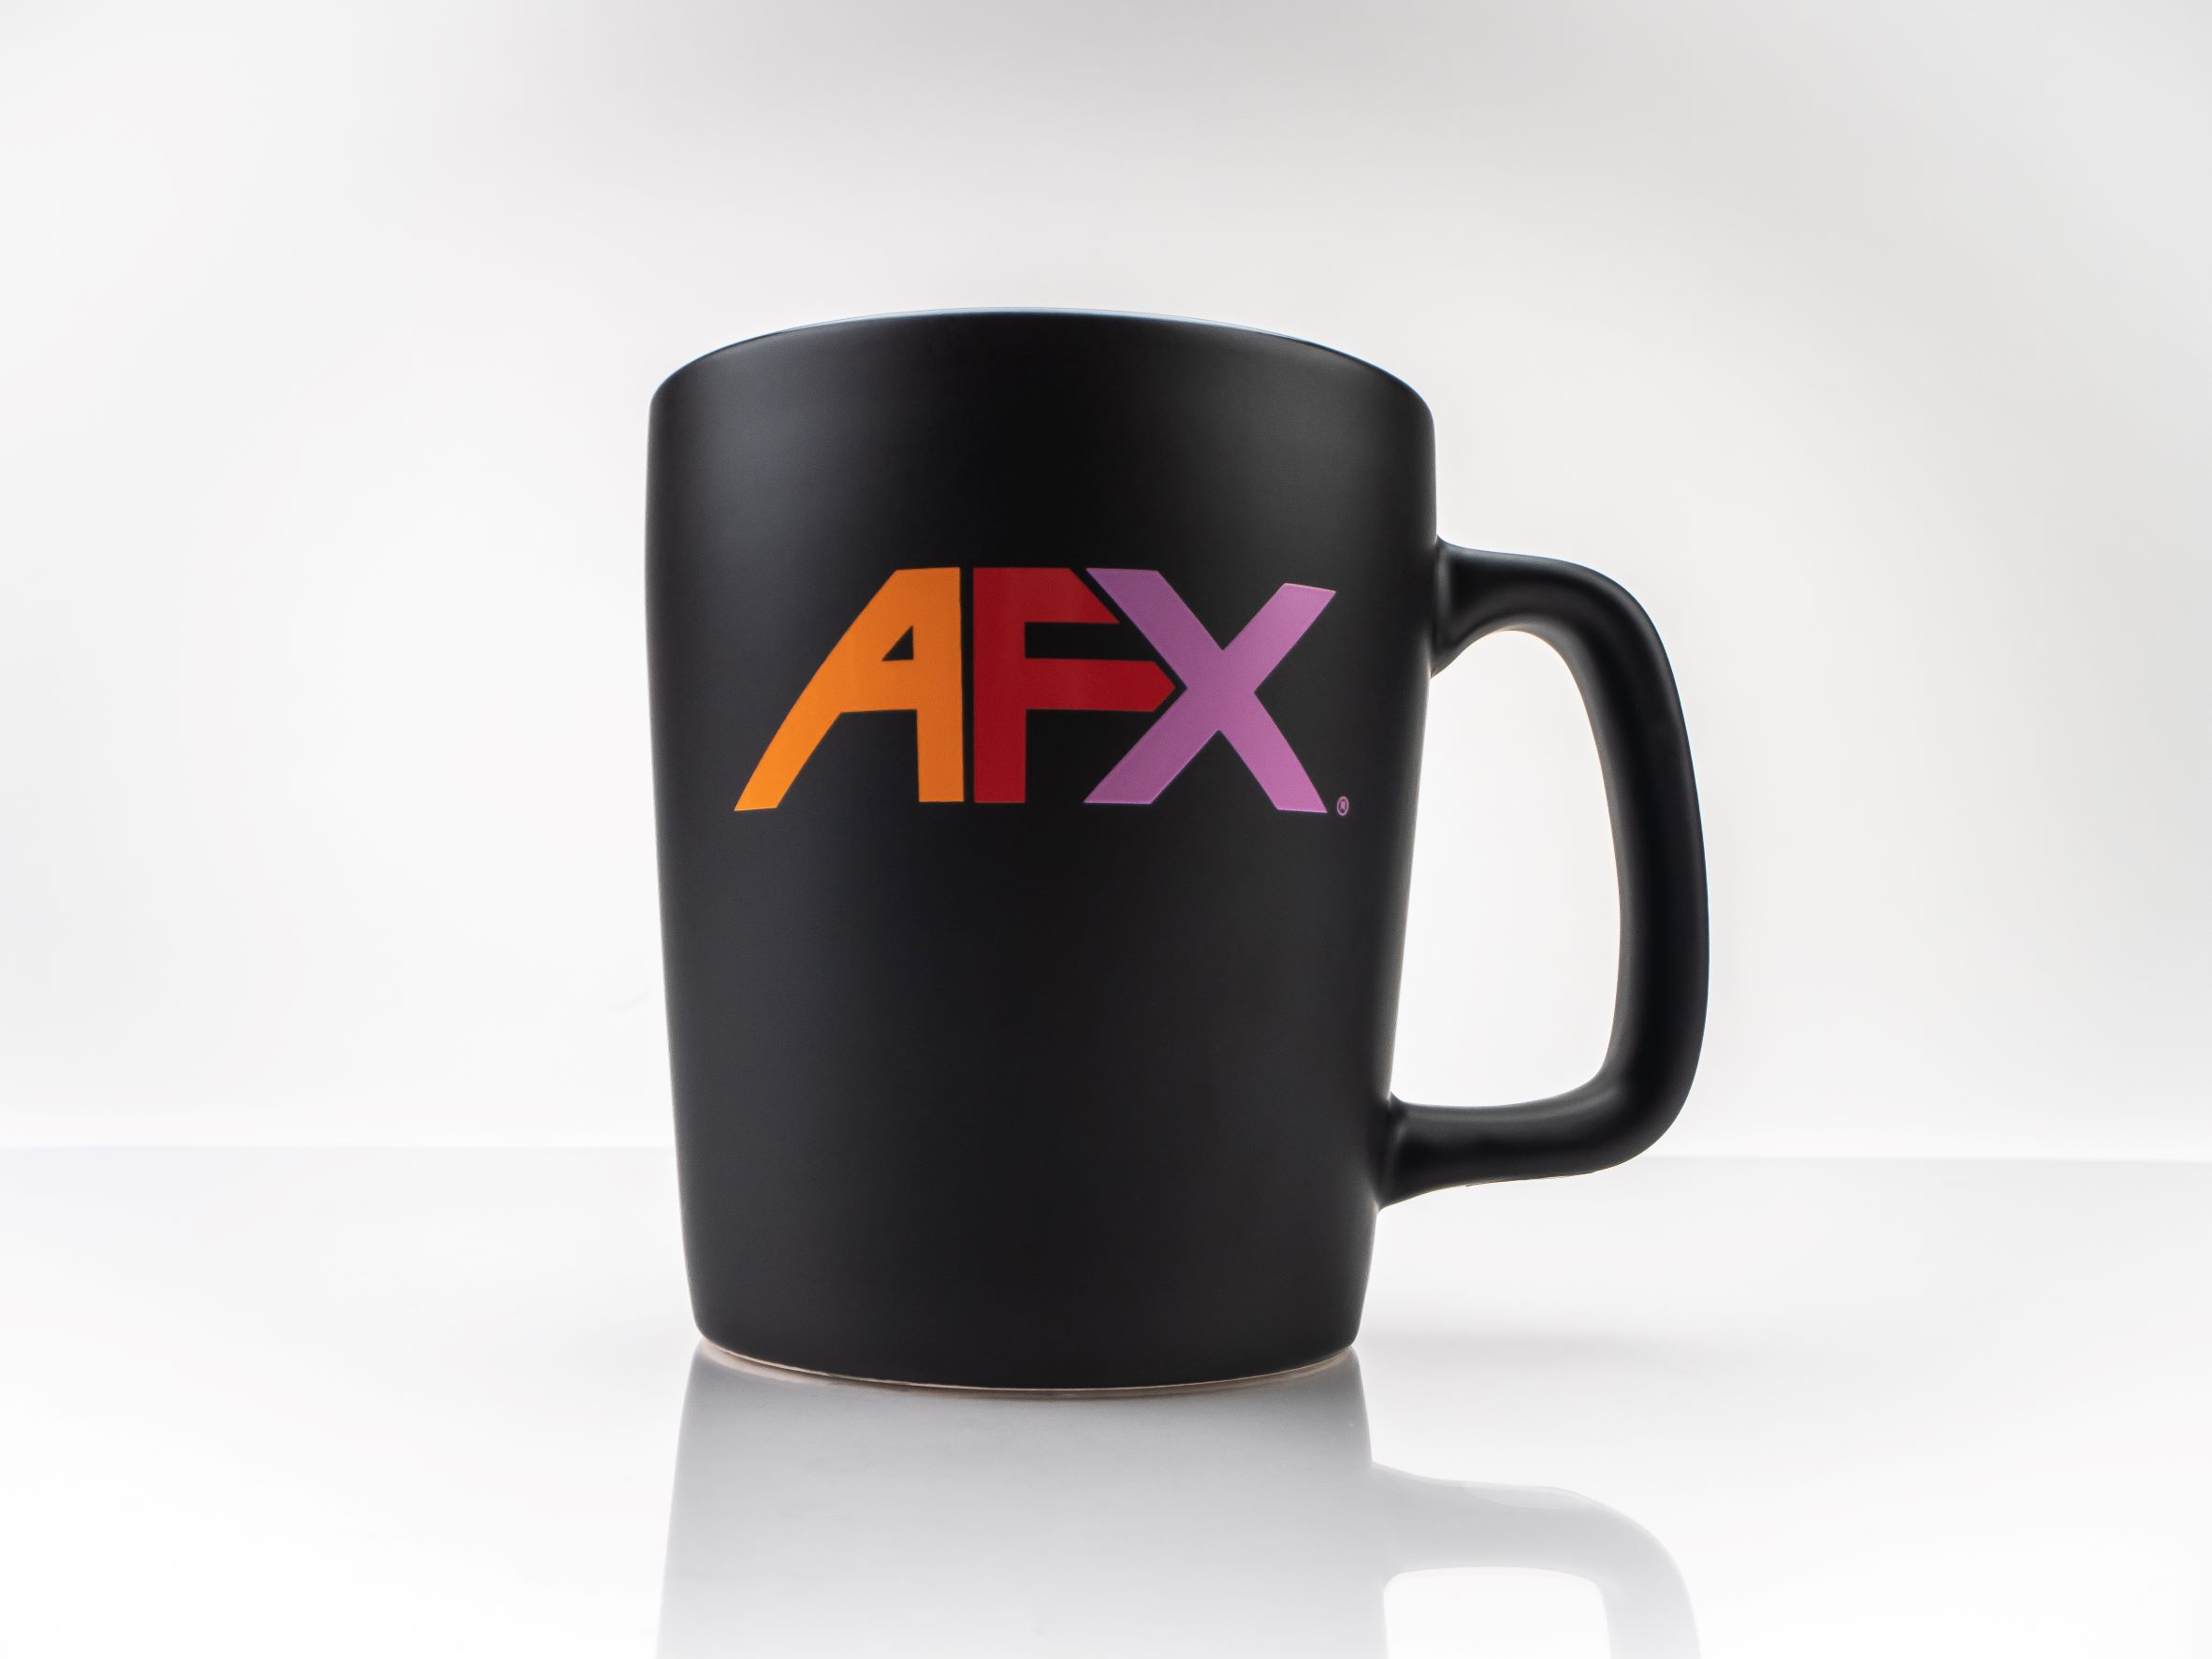 1084 AFX Racing Coffee Mug